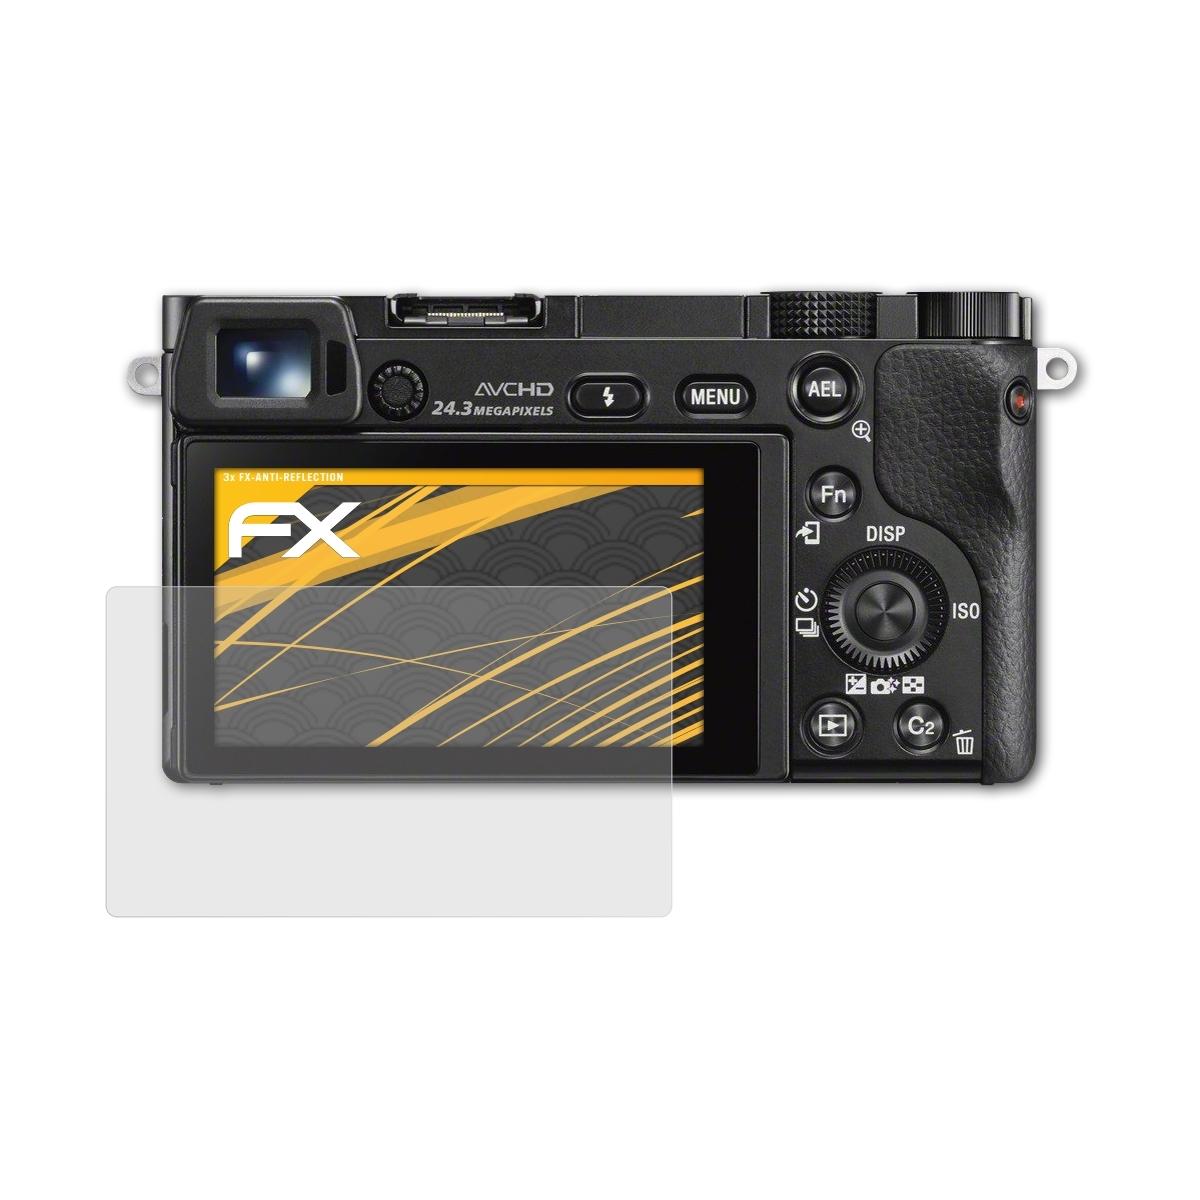 ATFOLIX 3x FX-Antireflex Displayschutz(für Sony (ILCE-6000)) a6000 Alpha